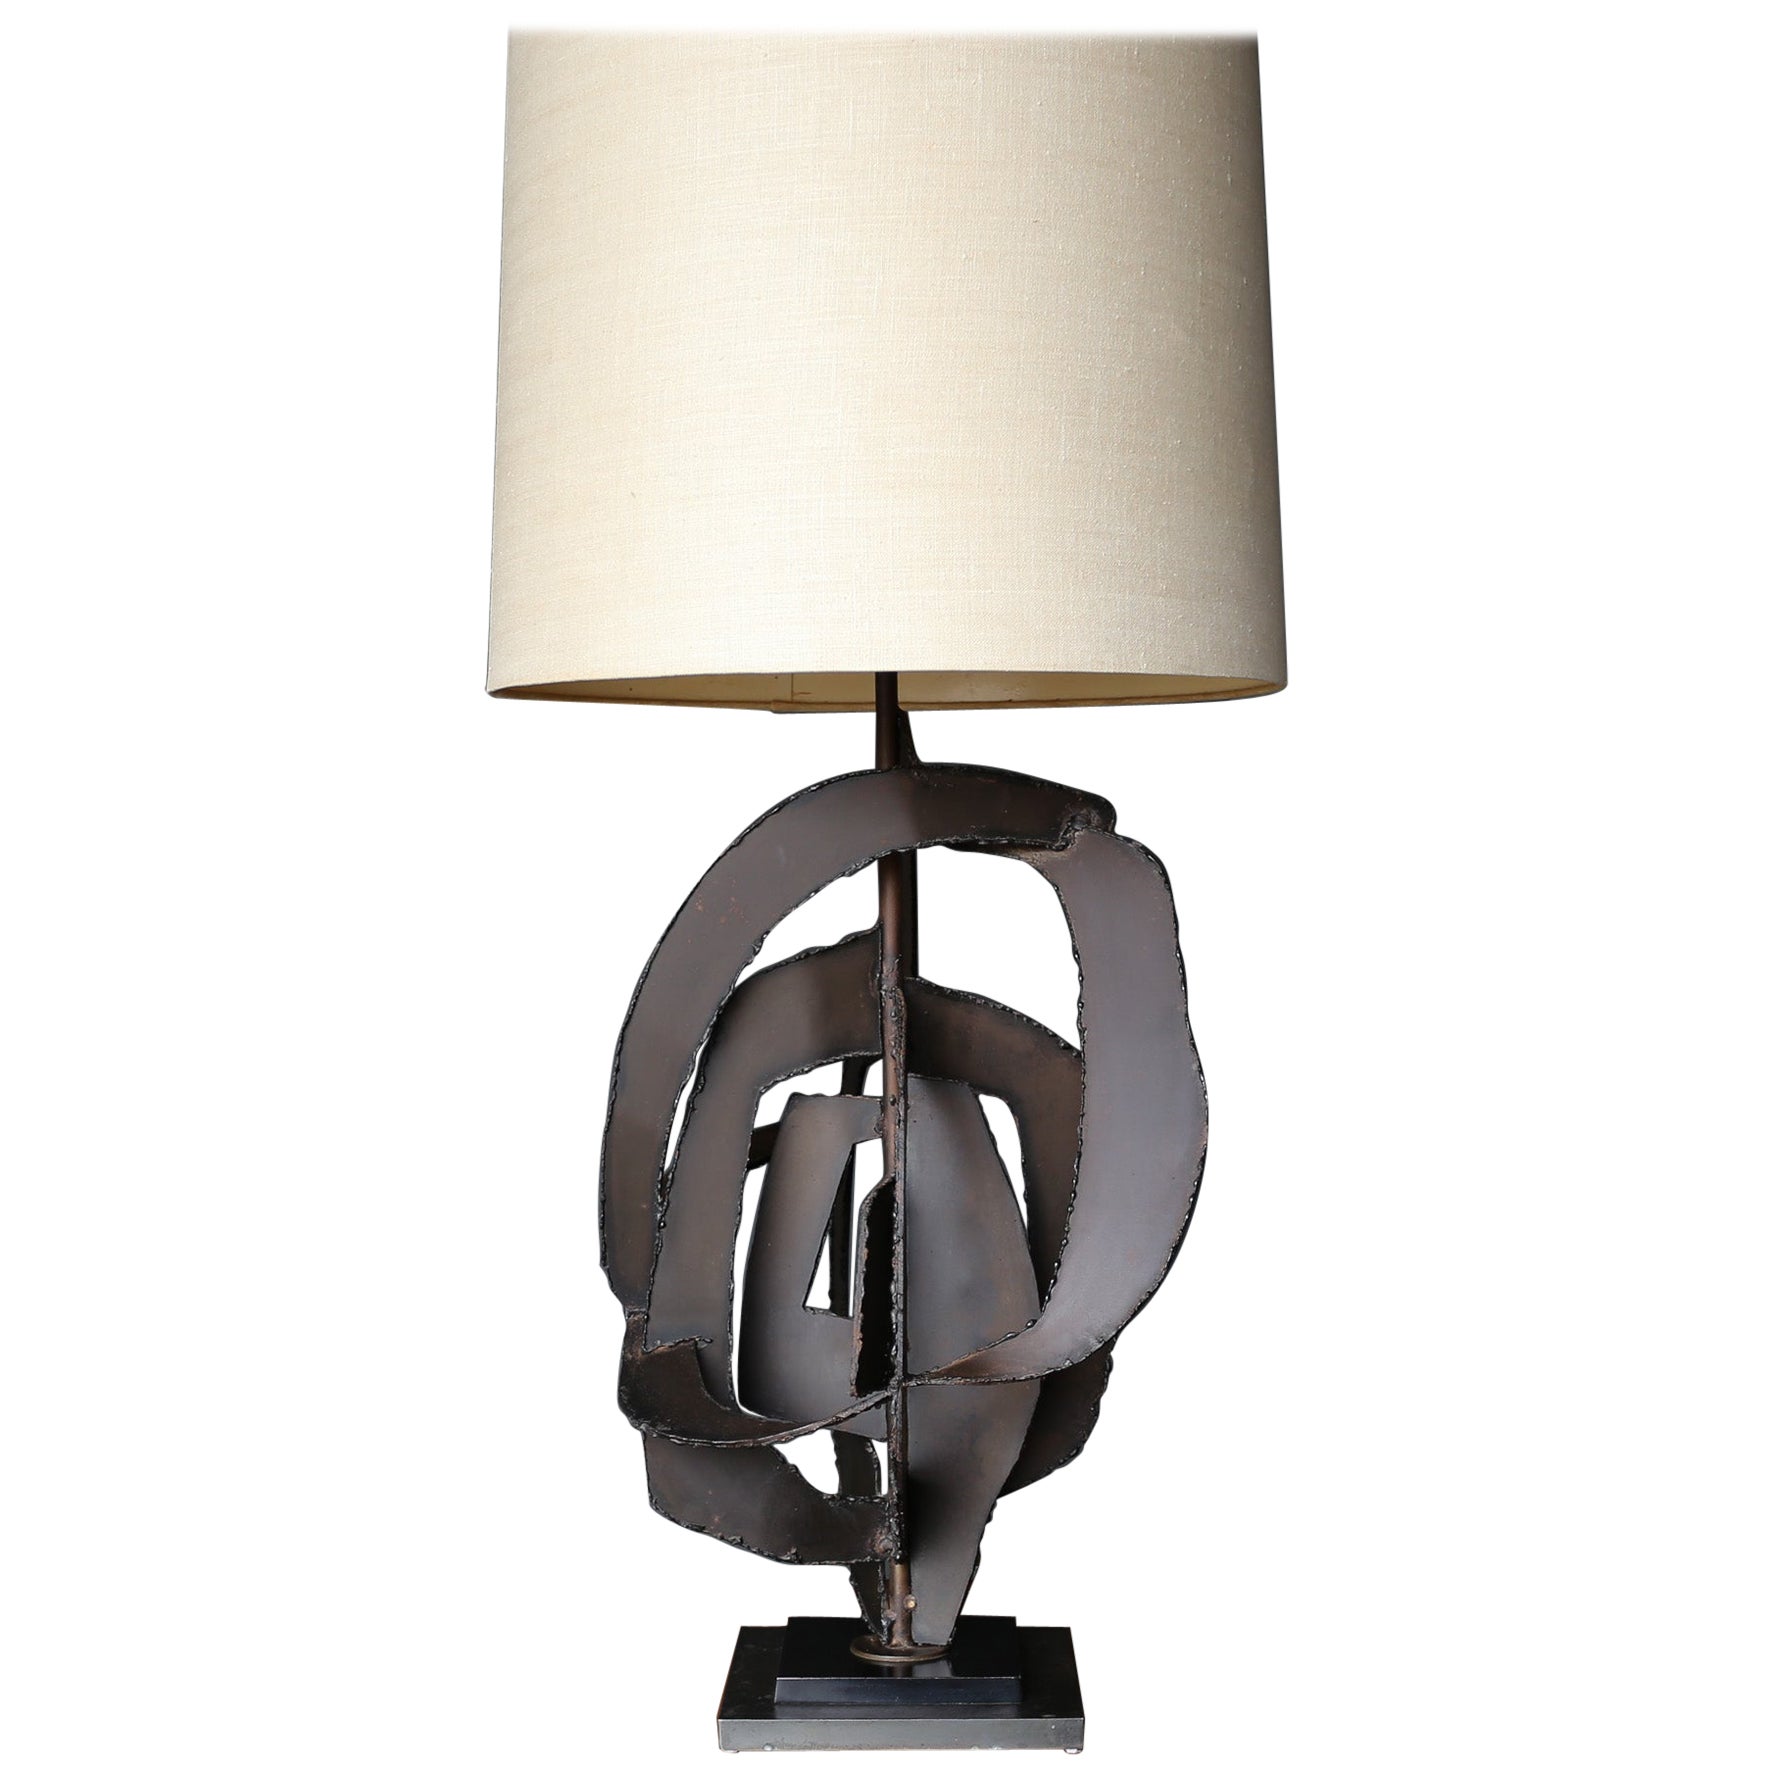 Lampe de table sculpturale de Richard Barr pour la collection STUDIO de Laurel, vers 1965